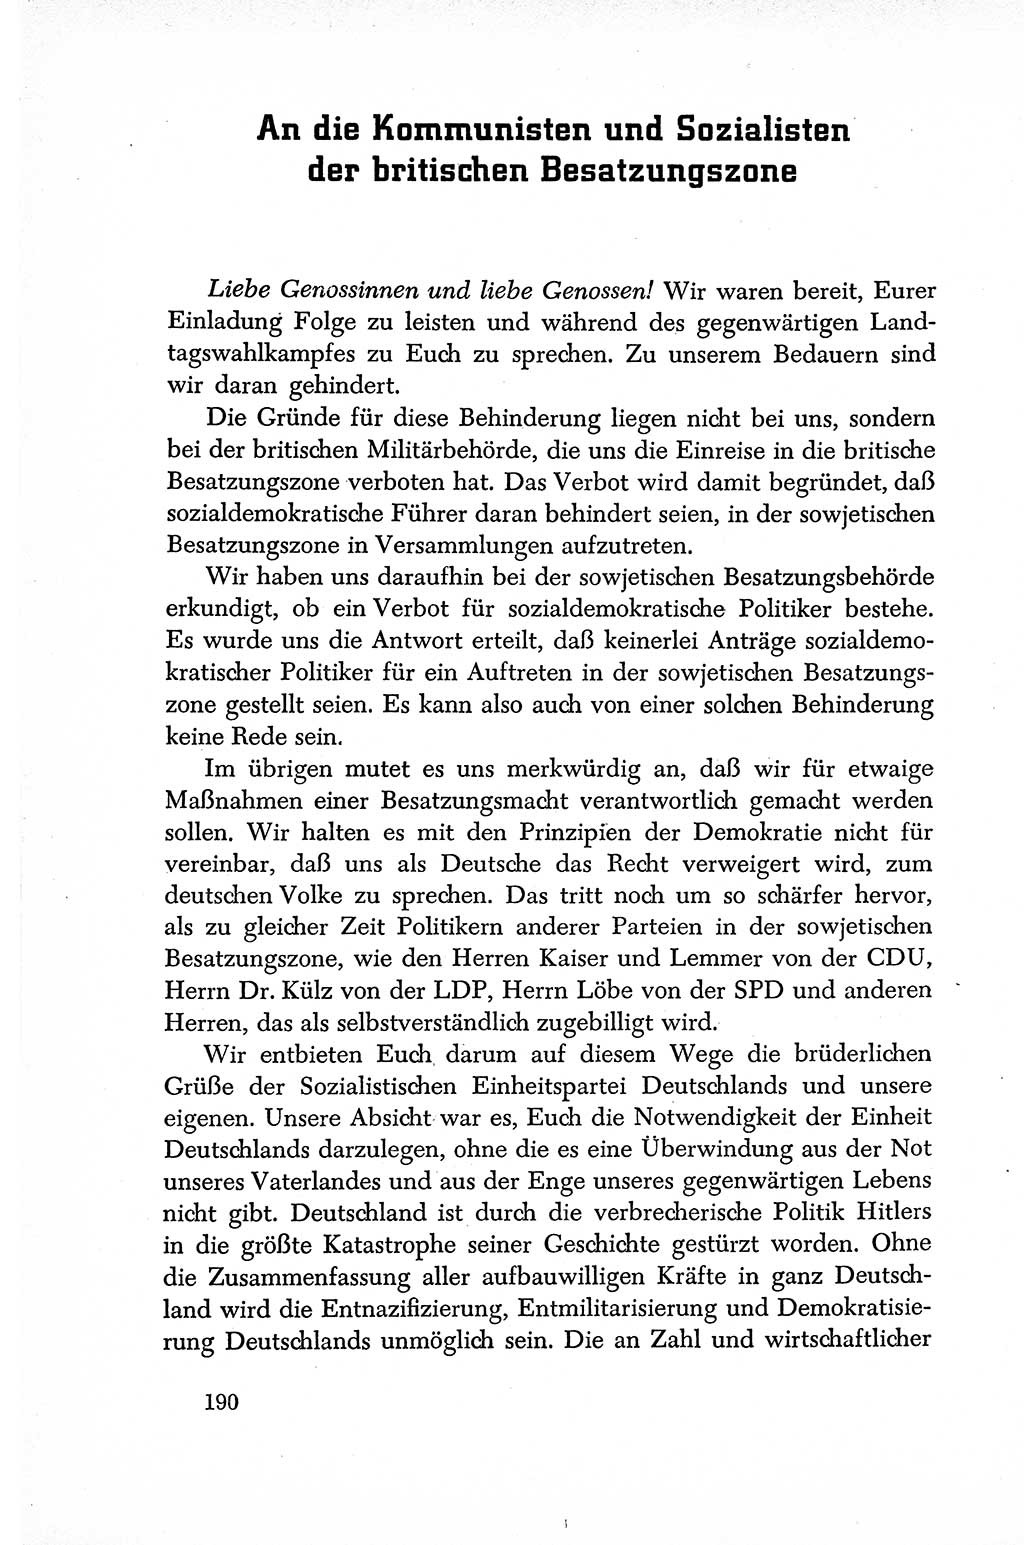 Dokumente der Sozialistischen Einheitspartei Deutschlands (SED) [Sowjetische Besatzungszone (SBZ) Deutschlands] 1946-1948, Seite 190 (Dok. SED SBZ Dtl. 1946-1948, S. 190)